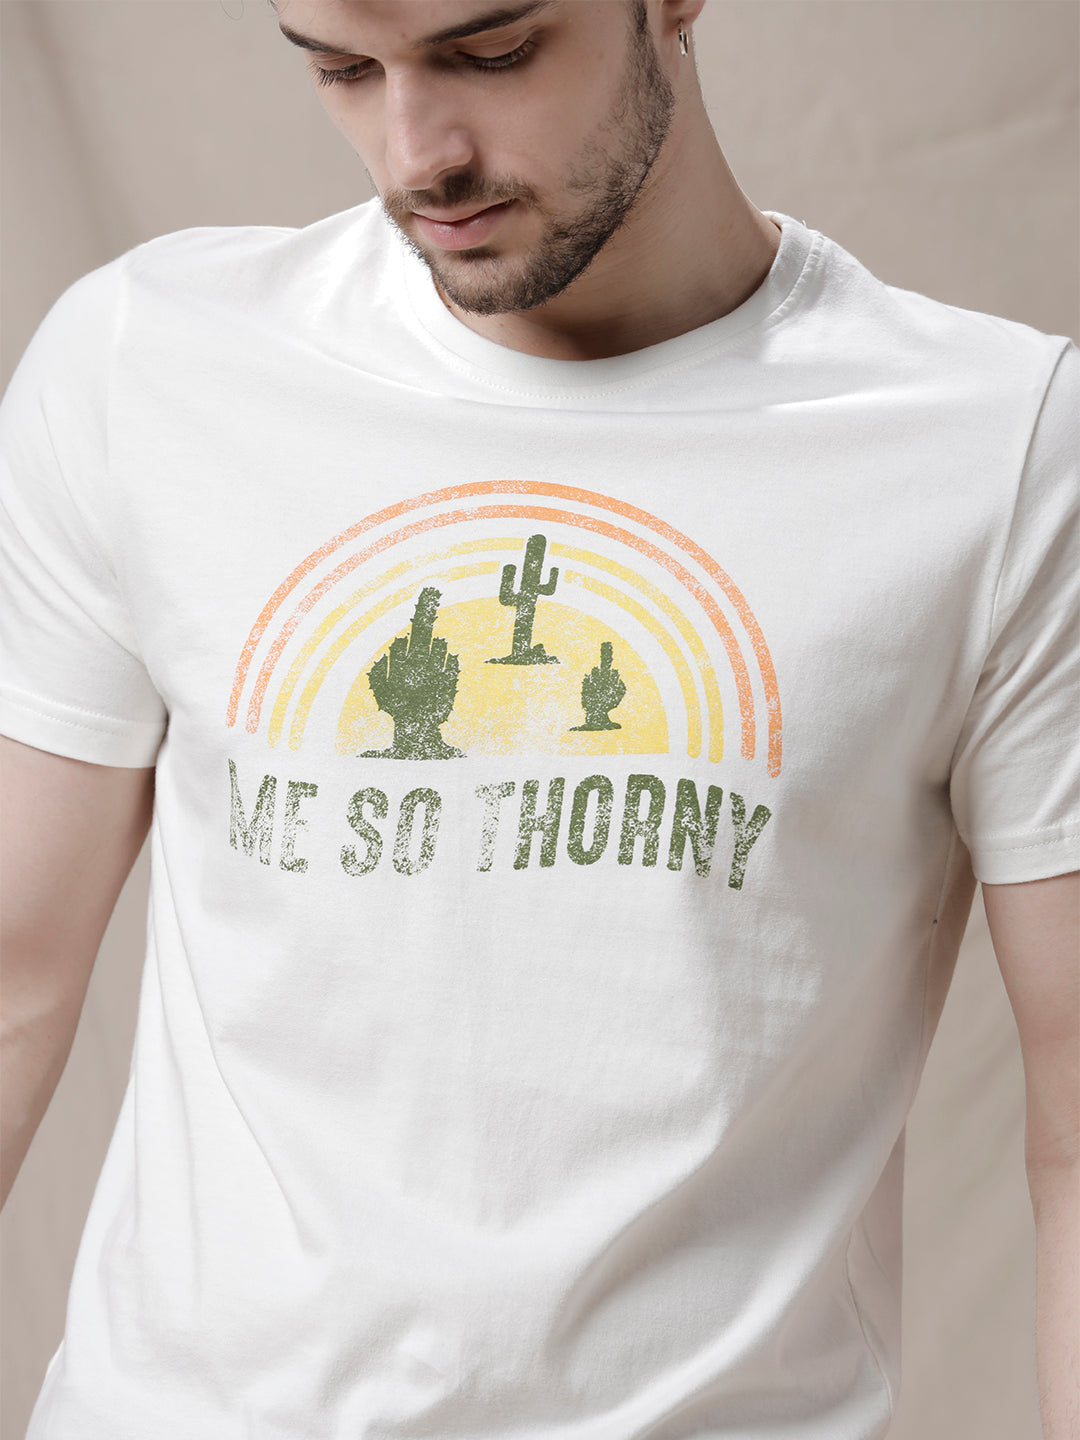 So Thorny Printed T-Shirt